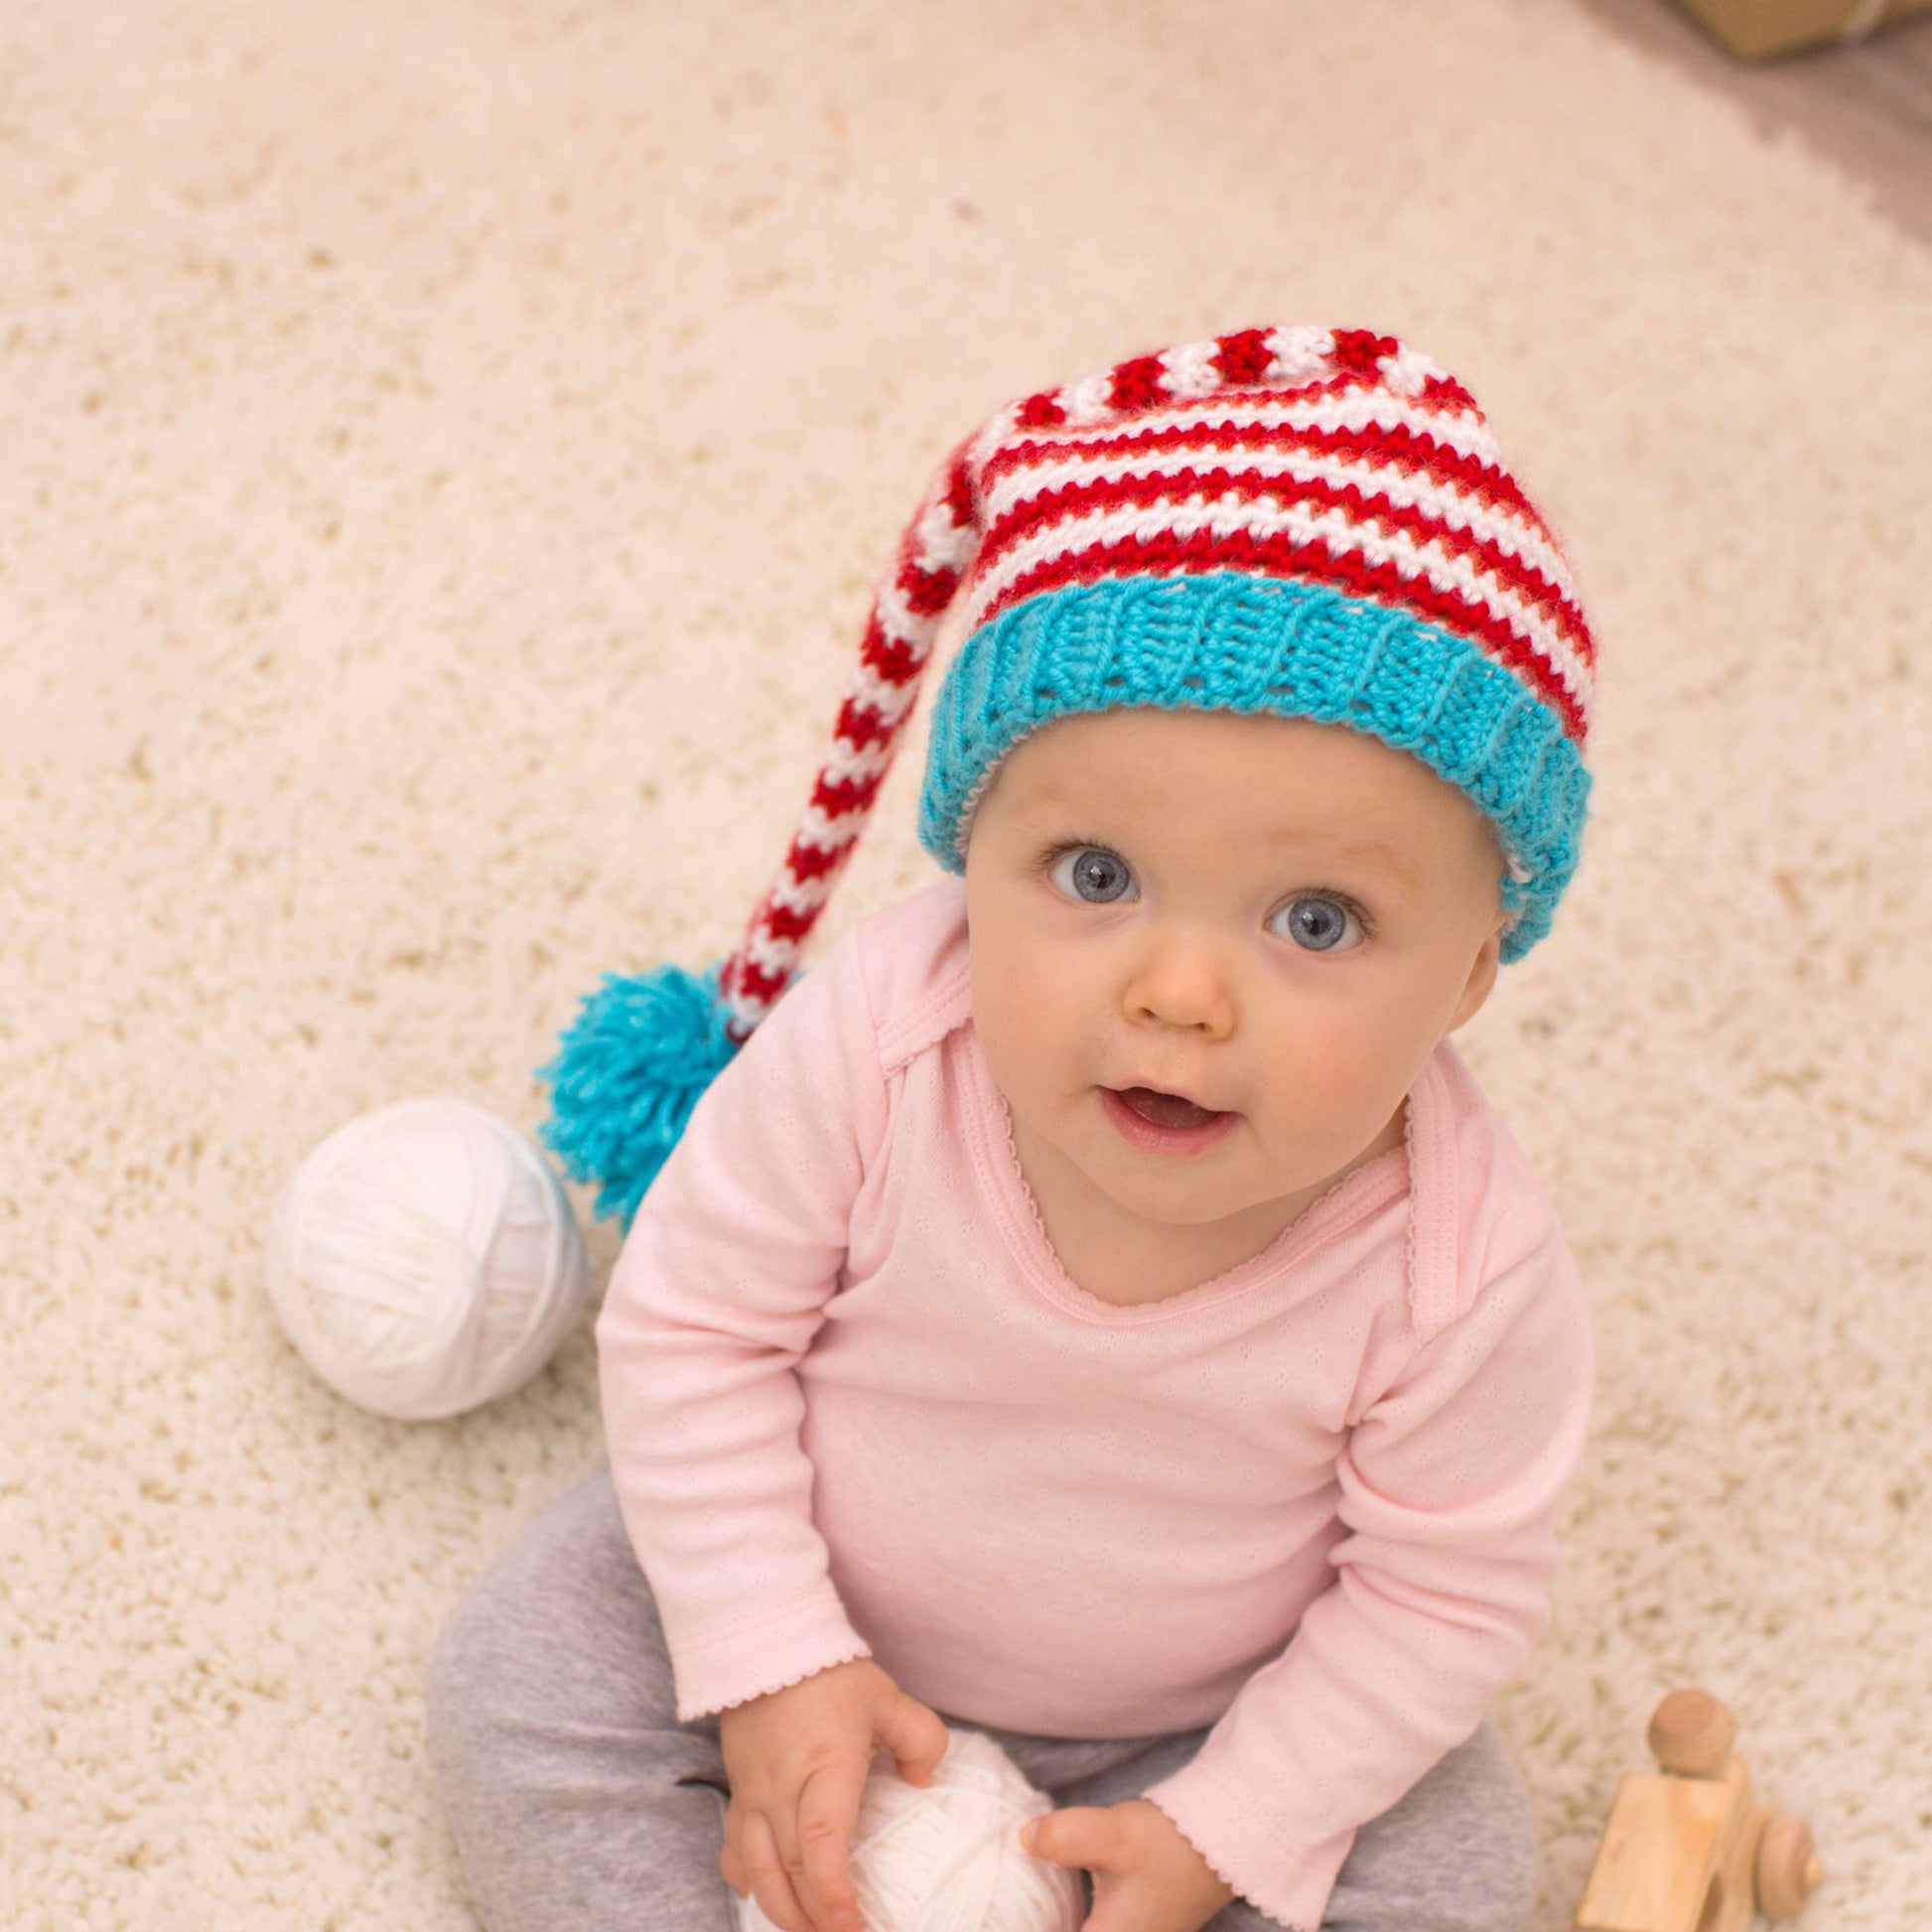 Free Red Heart Baby Elf Hat Crochet Pattern